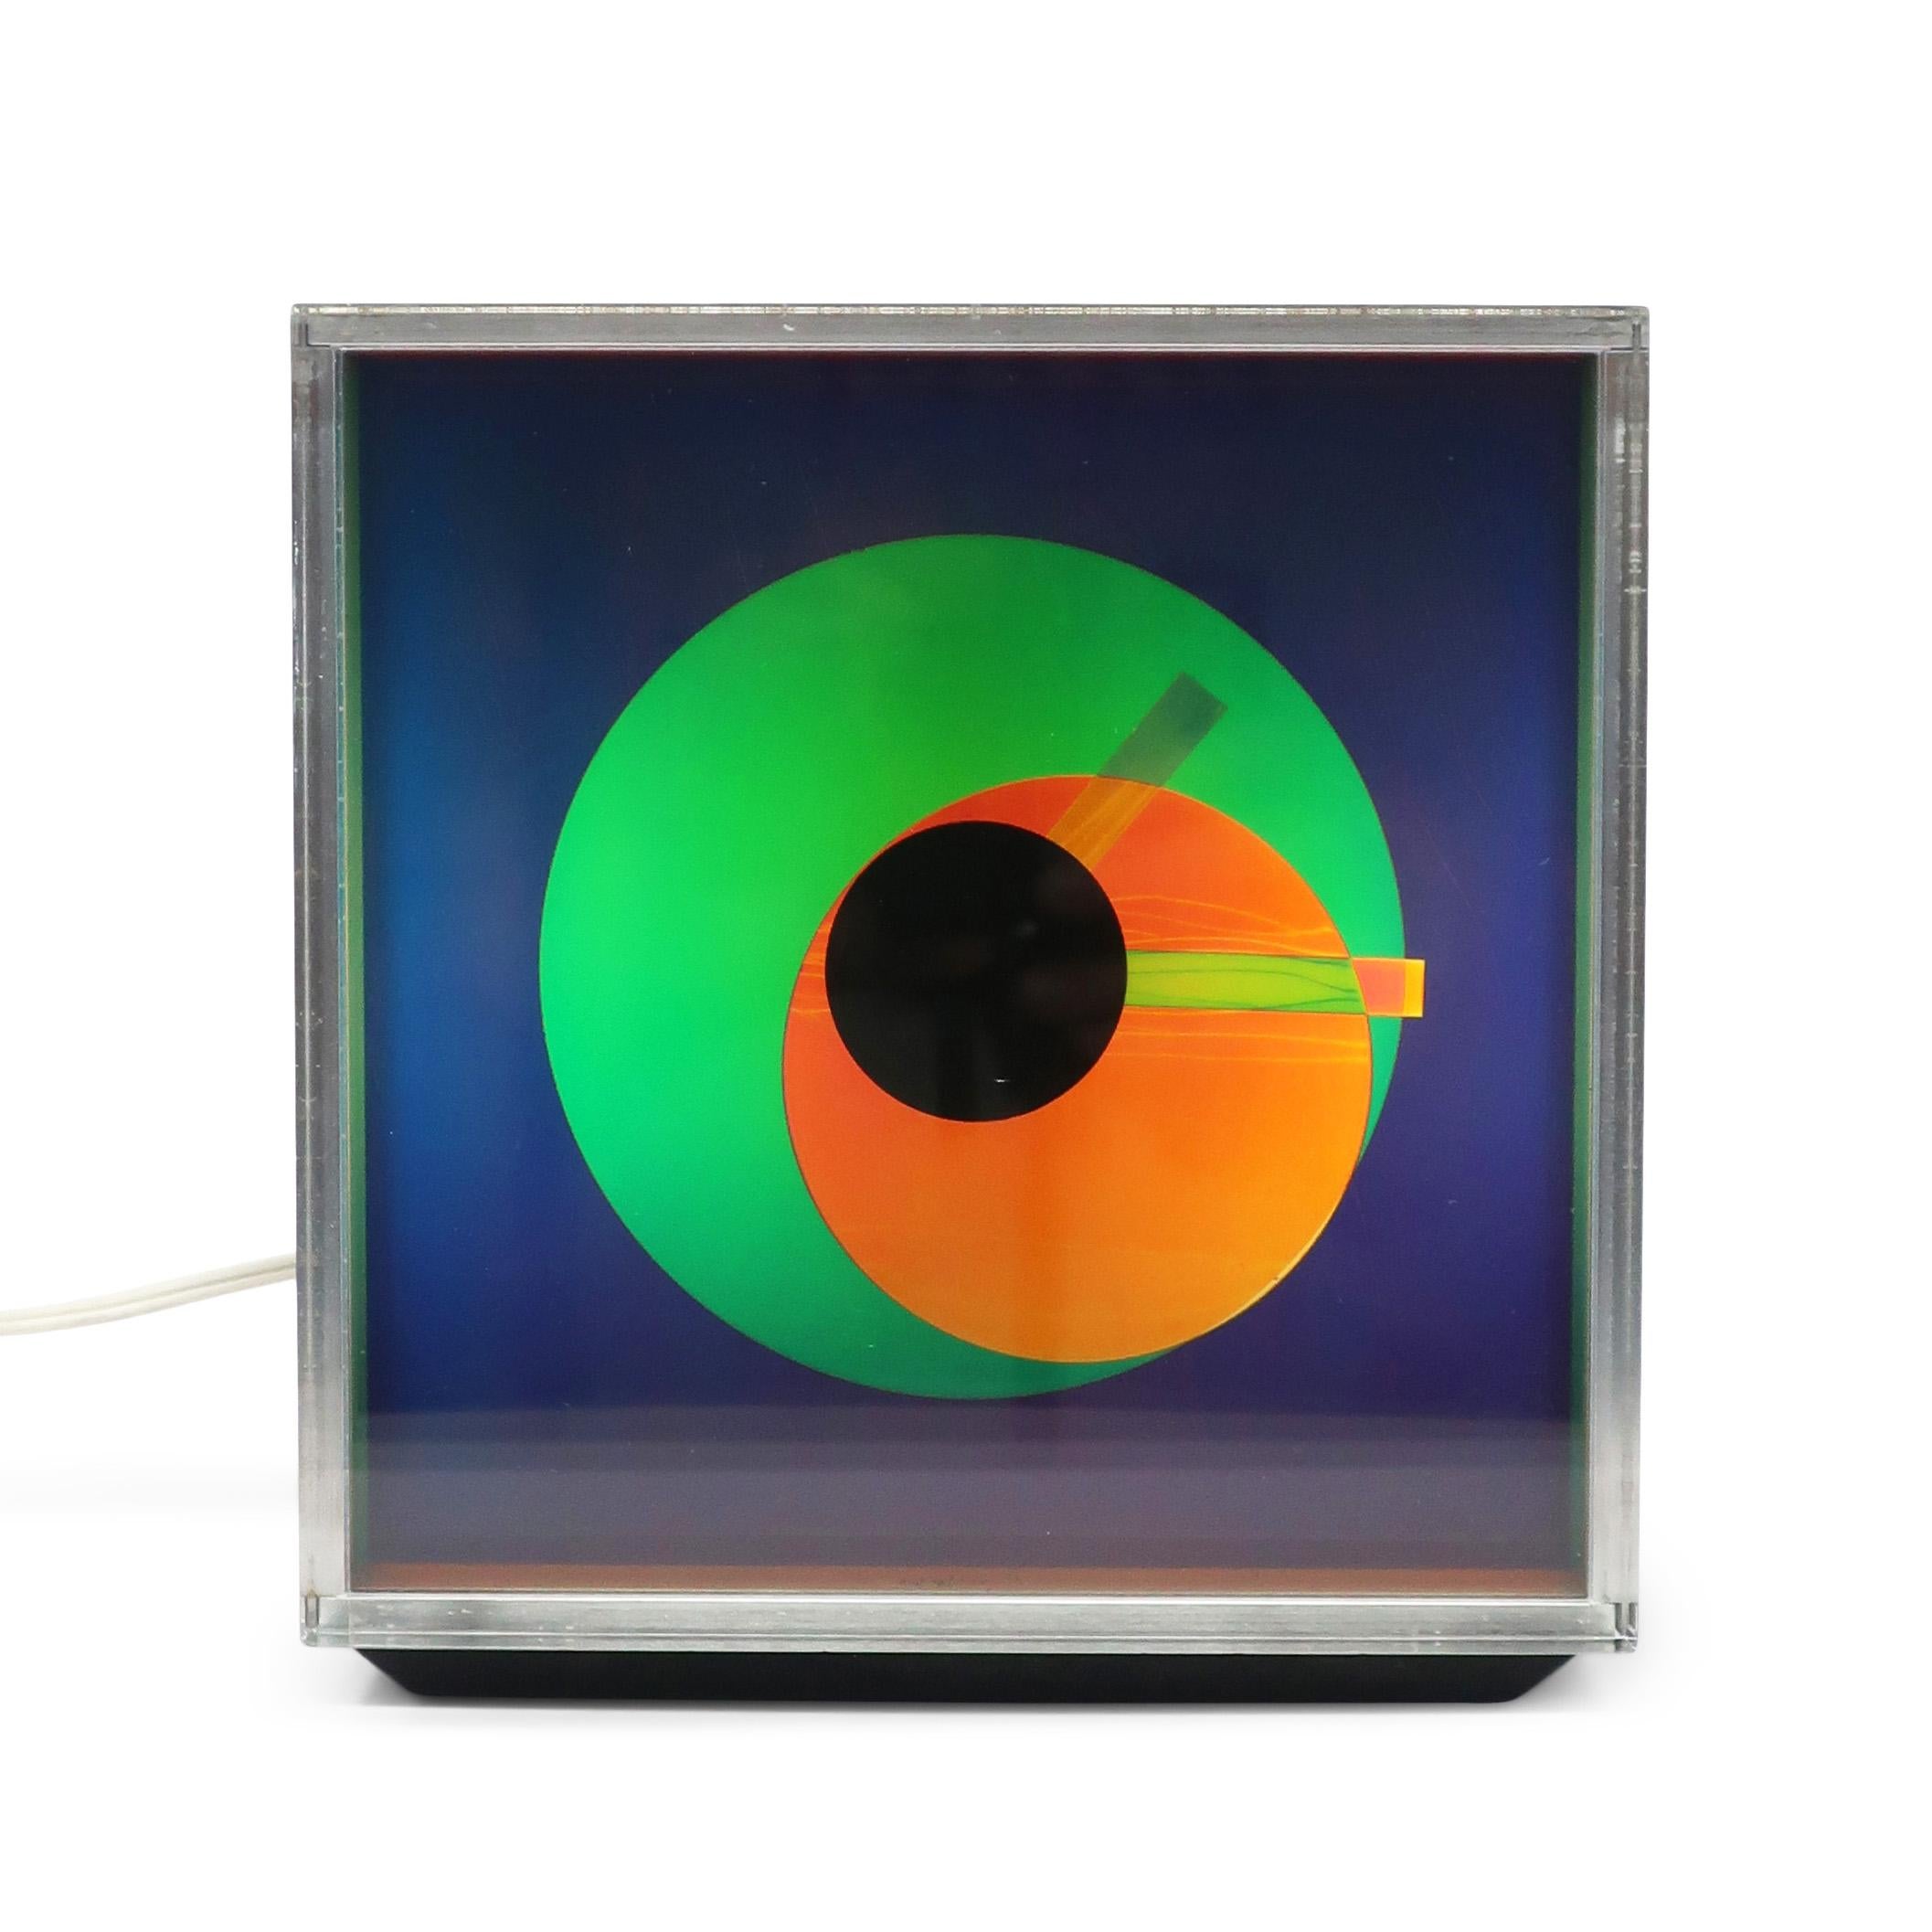 Pièce d'inspiration op-art datant de 1976, l'horloge Prisma de Kirsch Hamilton Associates réussit à capturer des couleurs vibrantes, le minimalisme et le design de l'ère spatiale des années 1970.  Cette mystérieuse horloge changeant de couleur a un